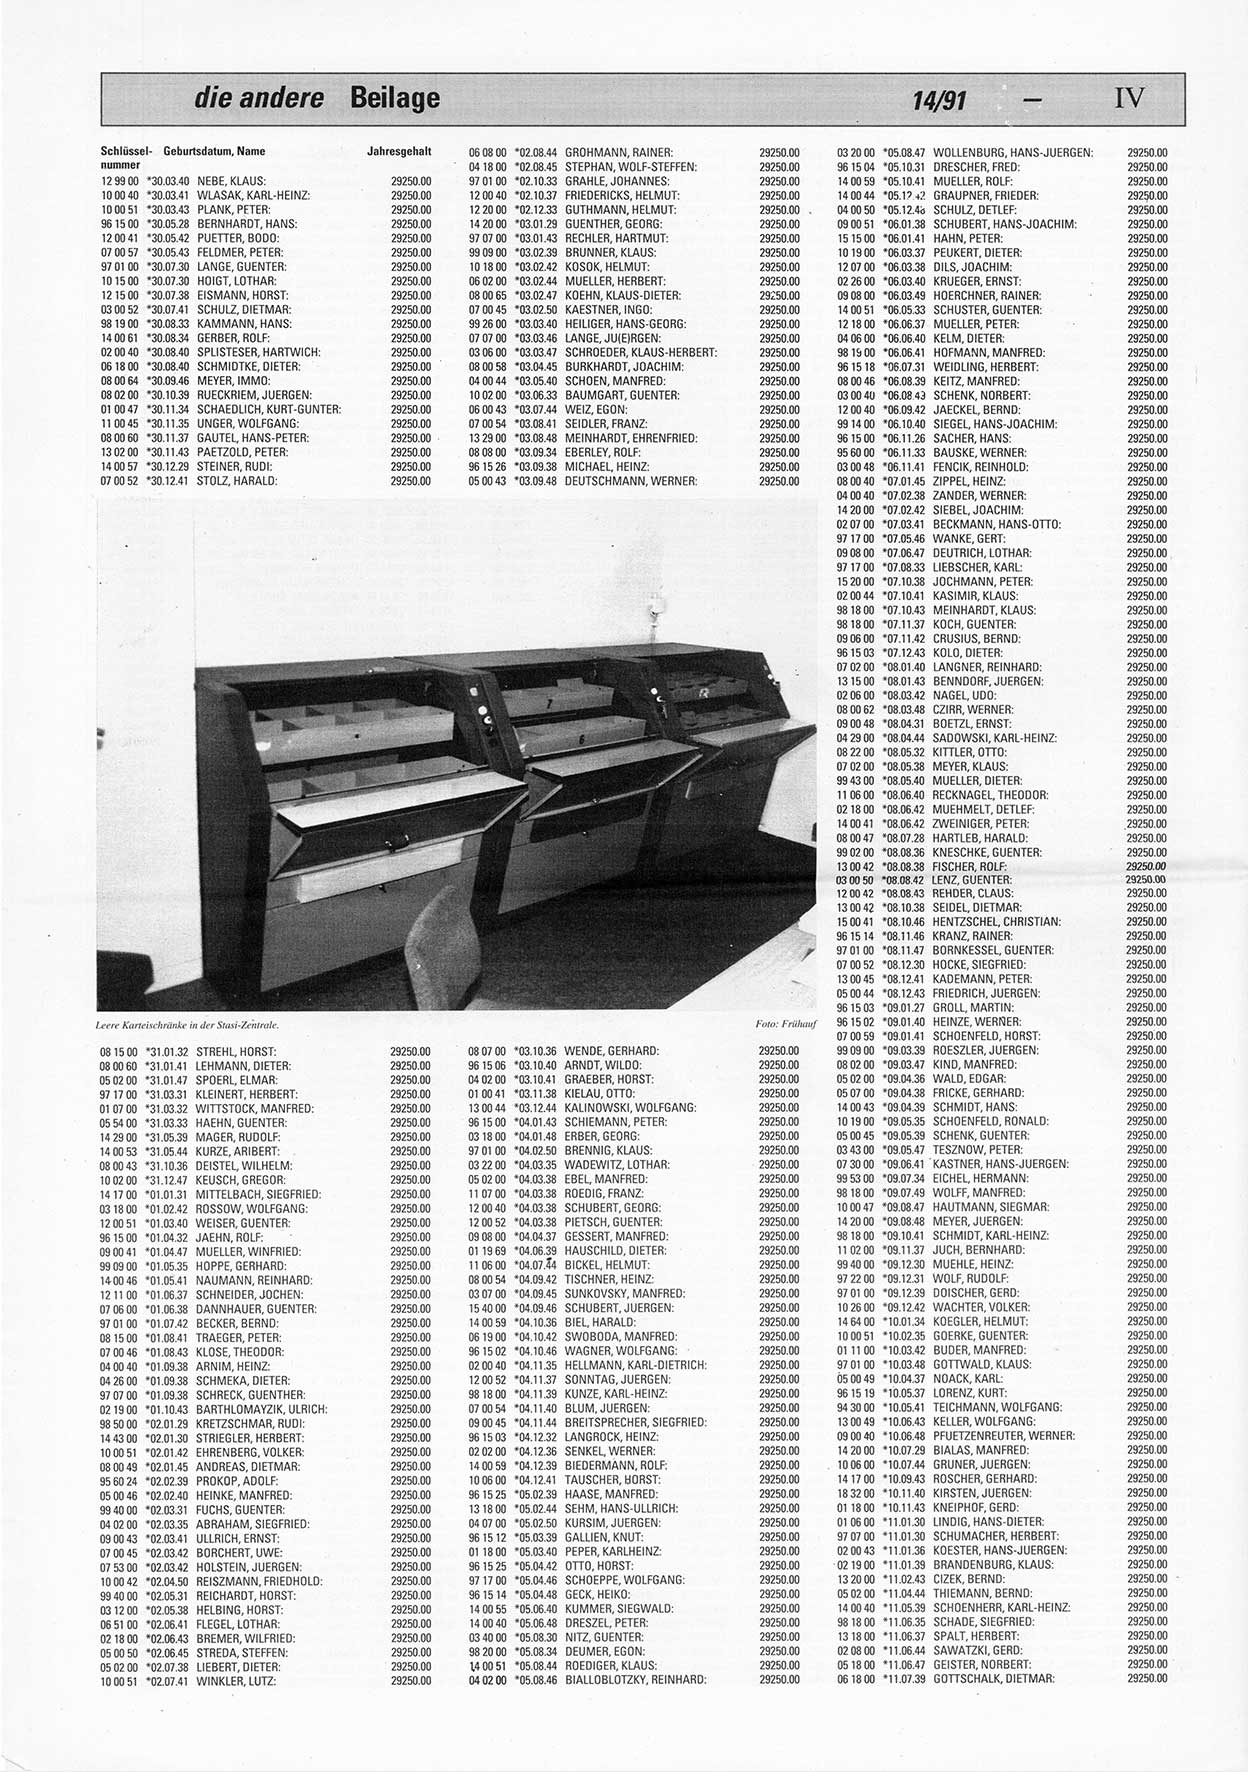 Die Andere, Unabhängige Wochenzeitung für Politik, Kultur und Kunst, Ausgabe 14 vom 3.4.1991, Beilage 5, Seite 4 (And. W.-Zg. Ausg. 14 1991, Beil. S. 4)